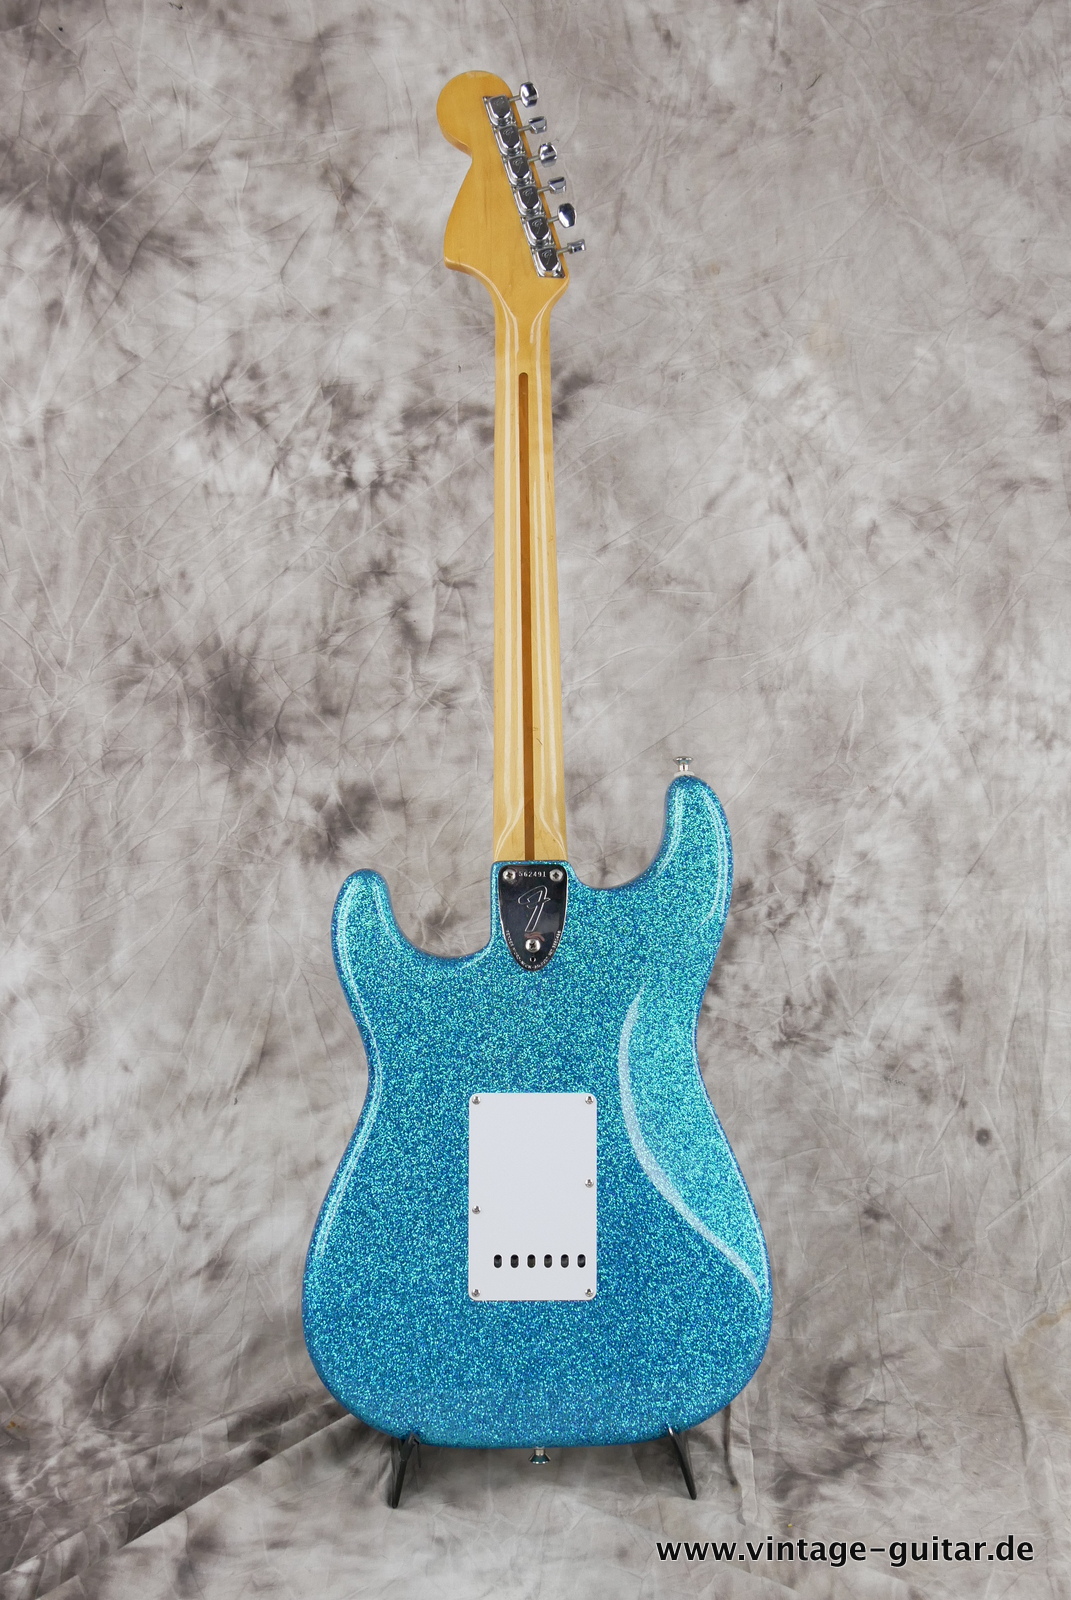 Fender-Stratocaster-1974c-blue-sparkle-002.JPG